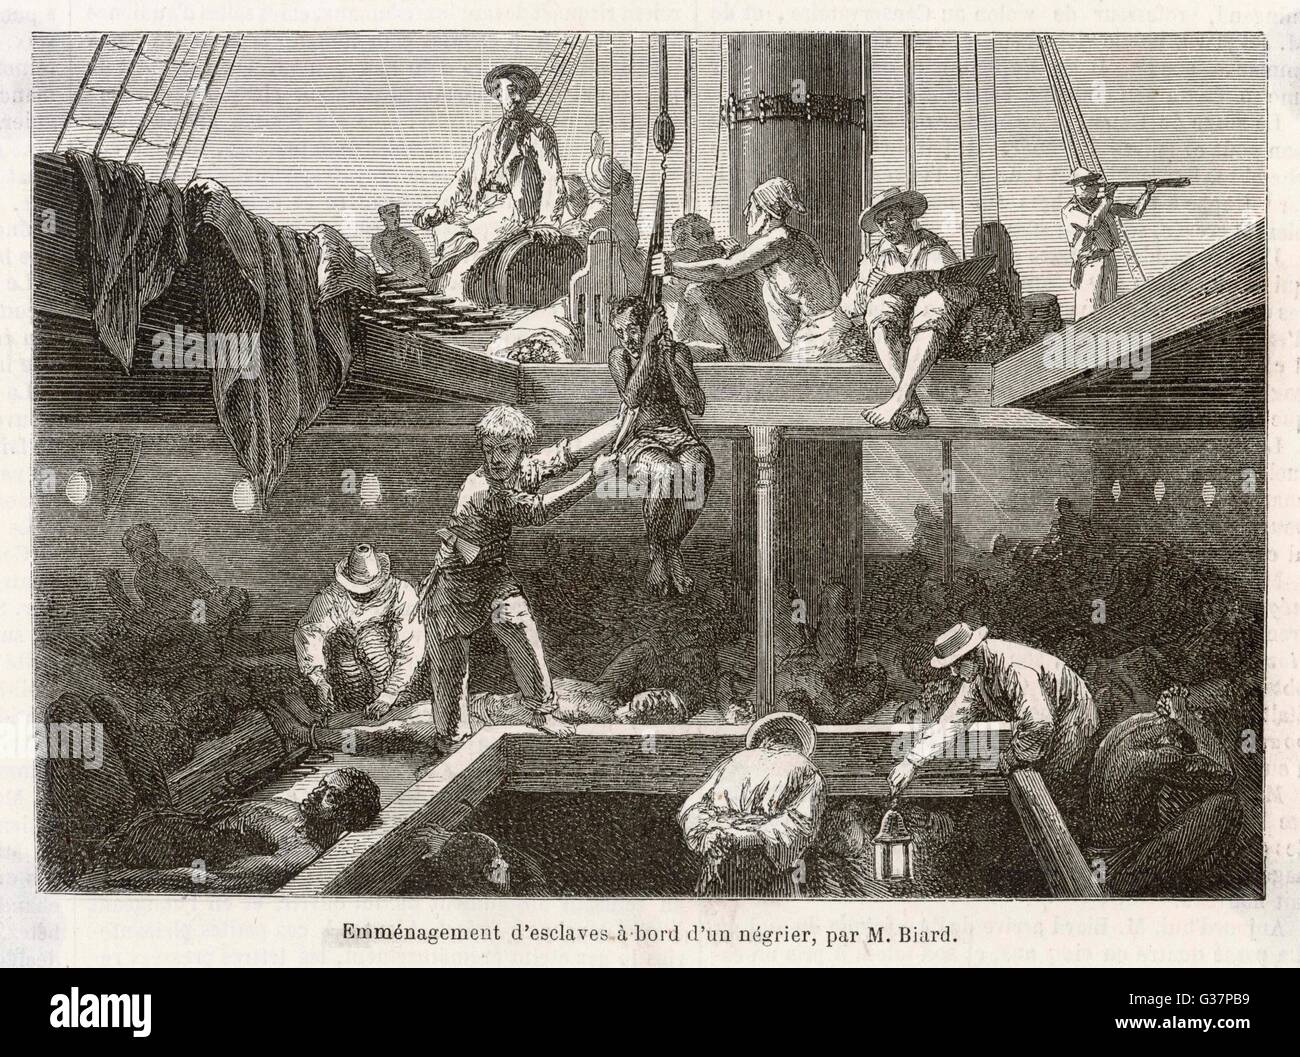 Раба удовольствия. Трансатлантическая работорговля картина. Работорговля Англия 18 век. Рабы на корабле.